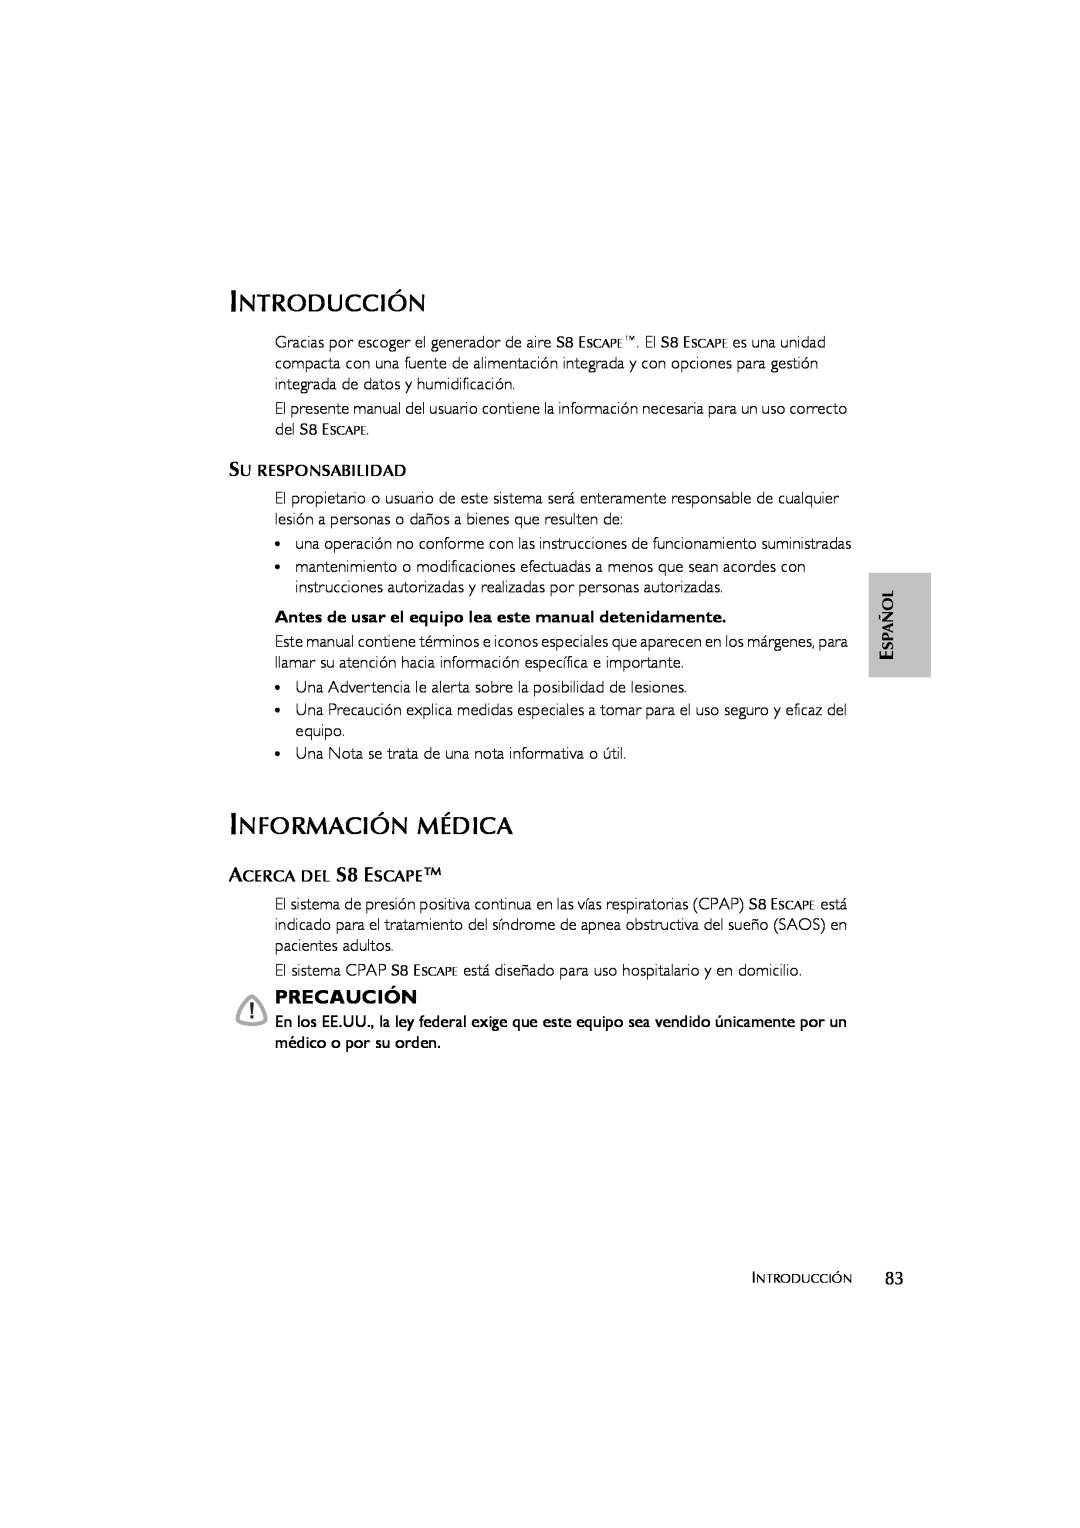 ResMed s8 user manual Introducción, Información Médica, Precaución 